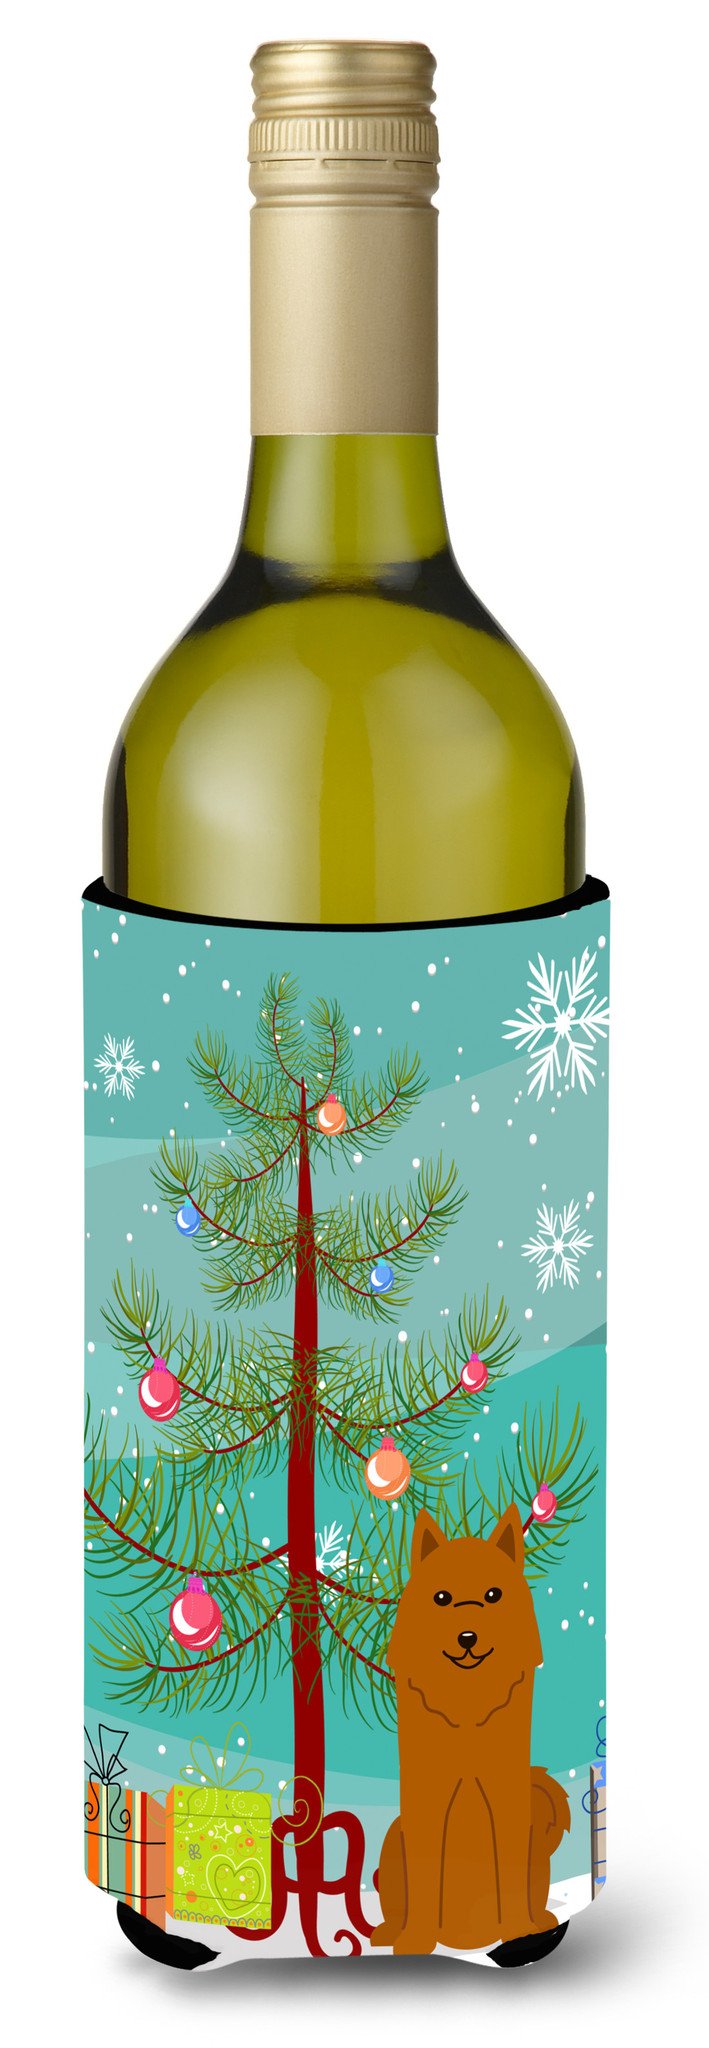 Merry Christmas Tree Karelian Bear Dog Wine Bottle Beverge Insulator Hugger BB4147LITERK by Caroline's Treasures